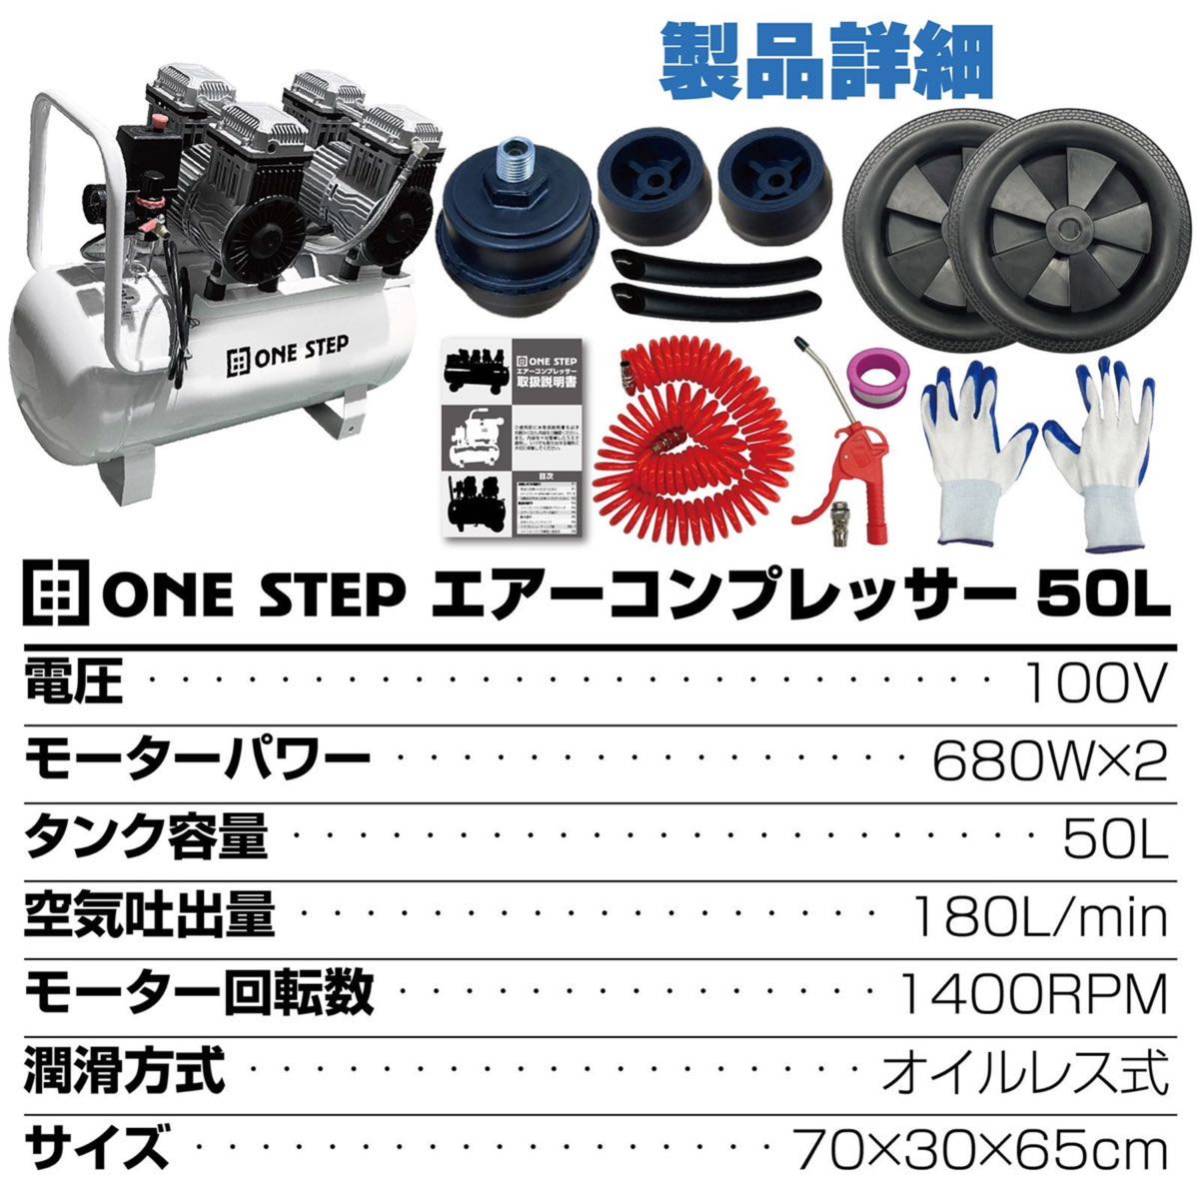 オイルレス エアーコンプレッサー 低騒音 大口径 ツールセット付 (50L